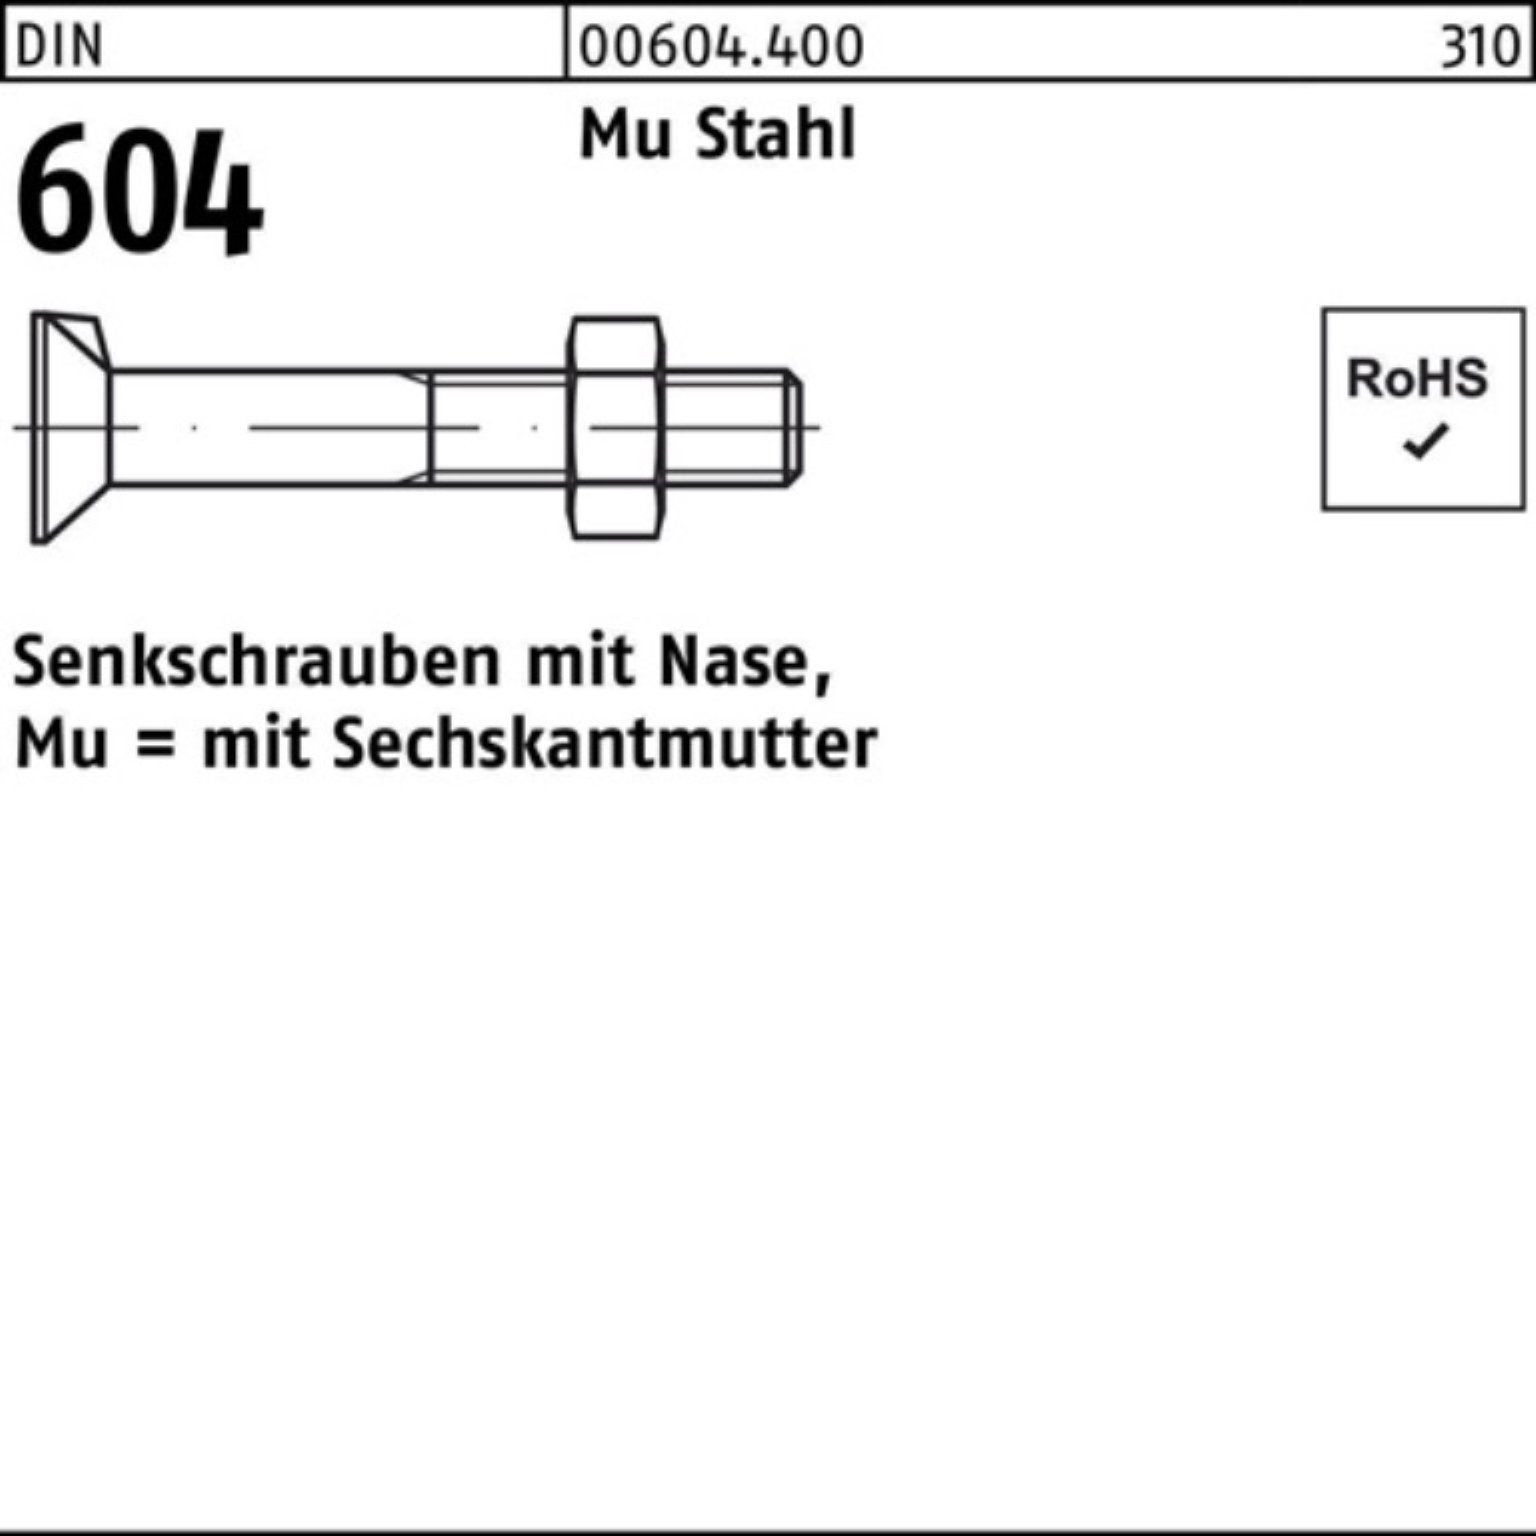 Reyher Senkschraube 200er Pack Stahl DIN 60 Senkschraube 20 4.6 604 M8x Nase/6-ktmutter Mu